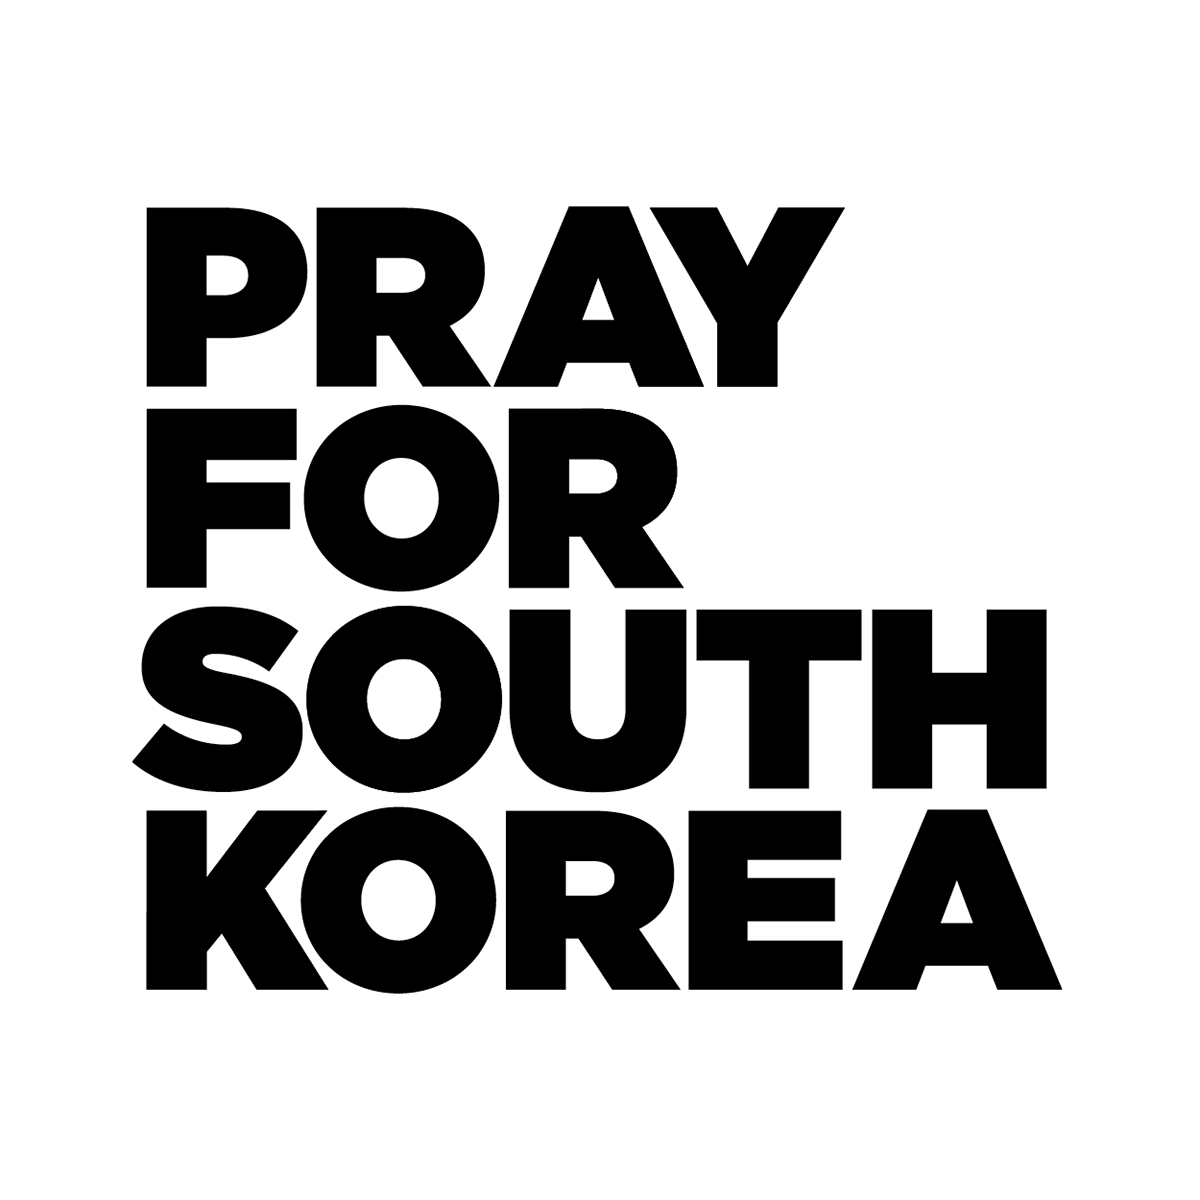 Pray for south Korea South Korea design modern poster